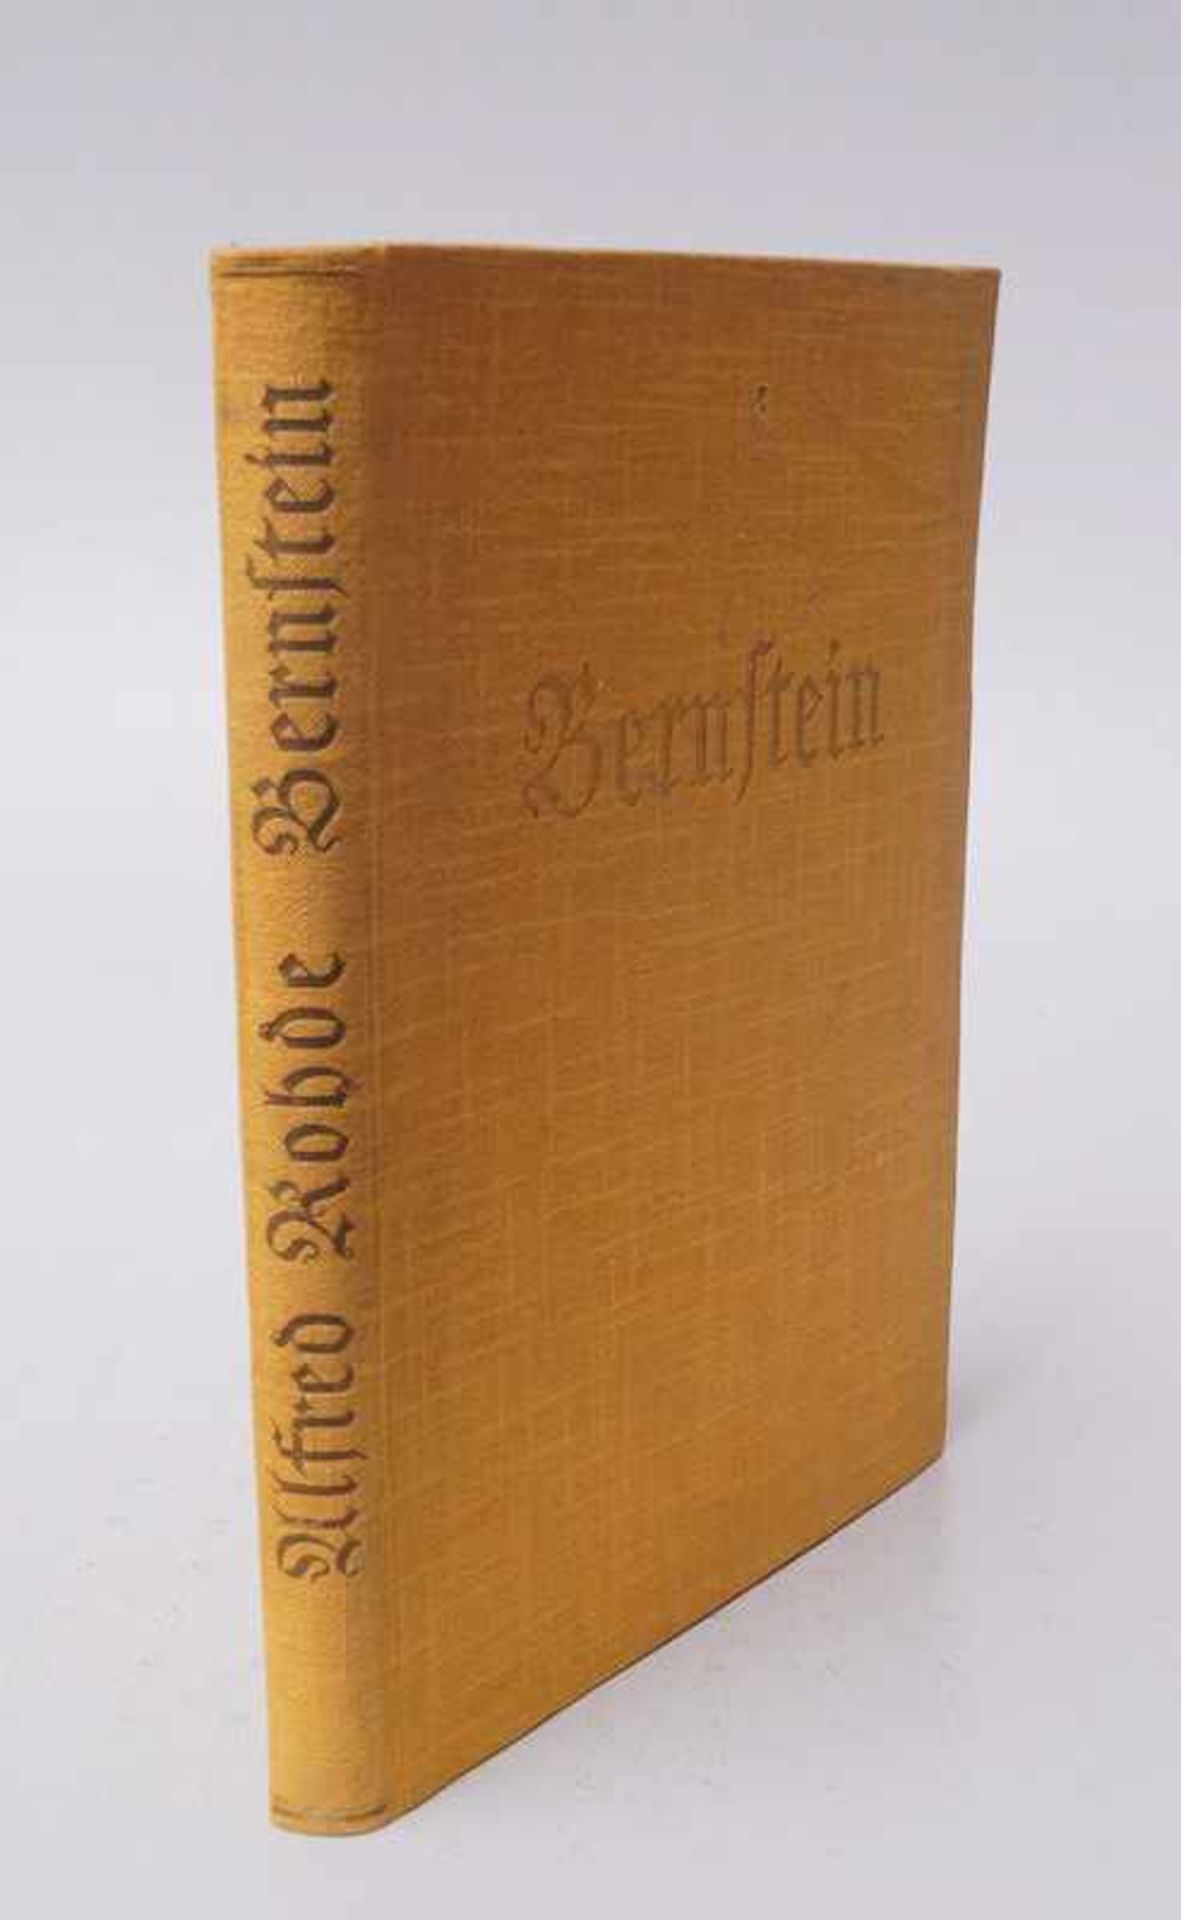 Alfred Rohde "Bernstein " ein deutscher Wertstroff- Hrsg in Berlin 1937 117 Seiten mit ca 600